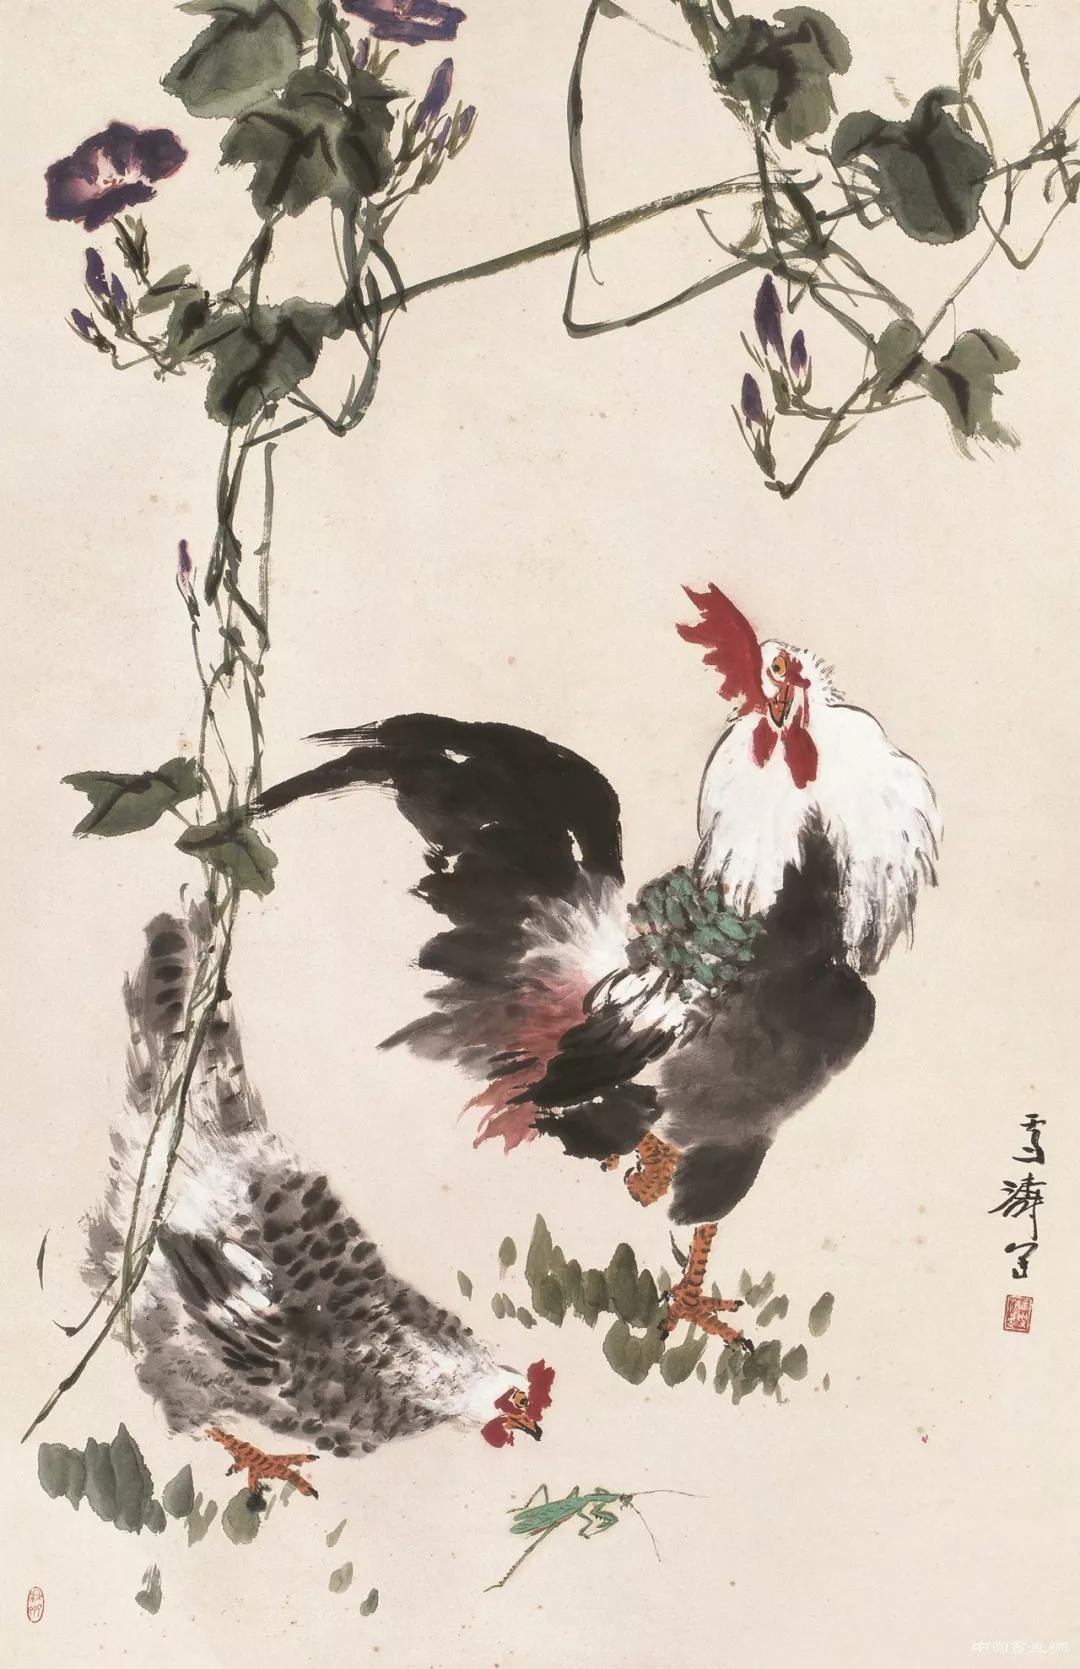 迎国庆·亮家底——中国国家画院经典美术作品展